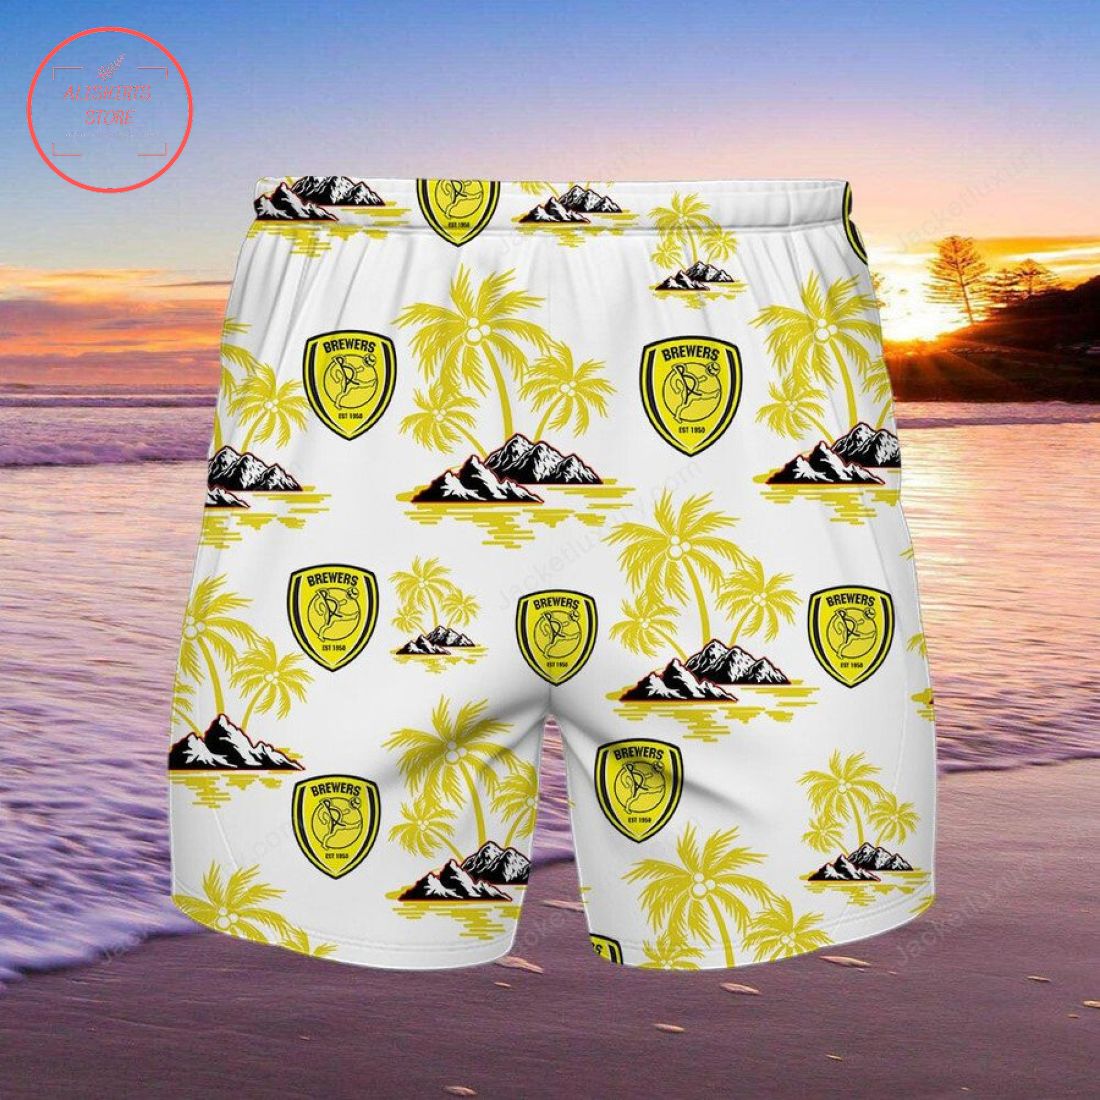 Burton Albion FC Hawaiian Shirt and Beach Shorts